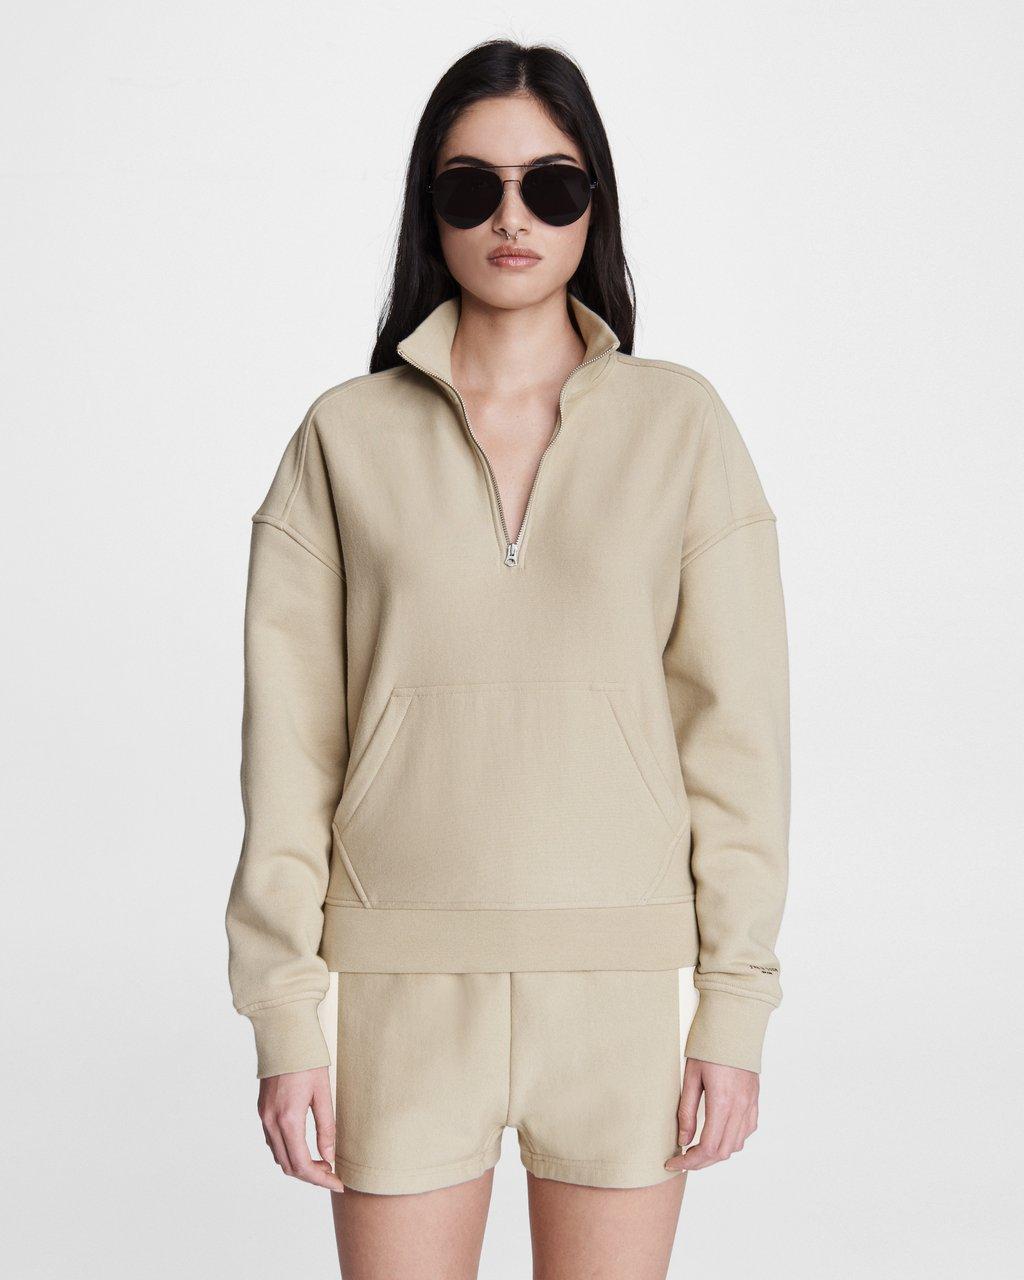 City Half-zip Pullover Sweater